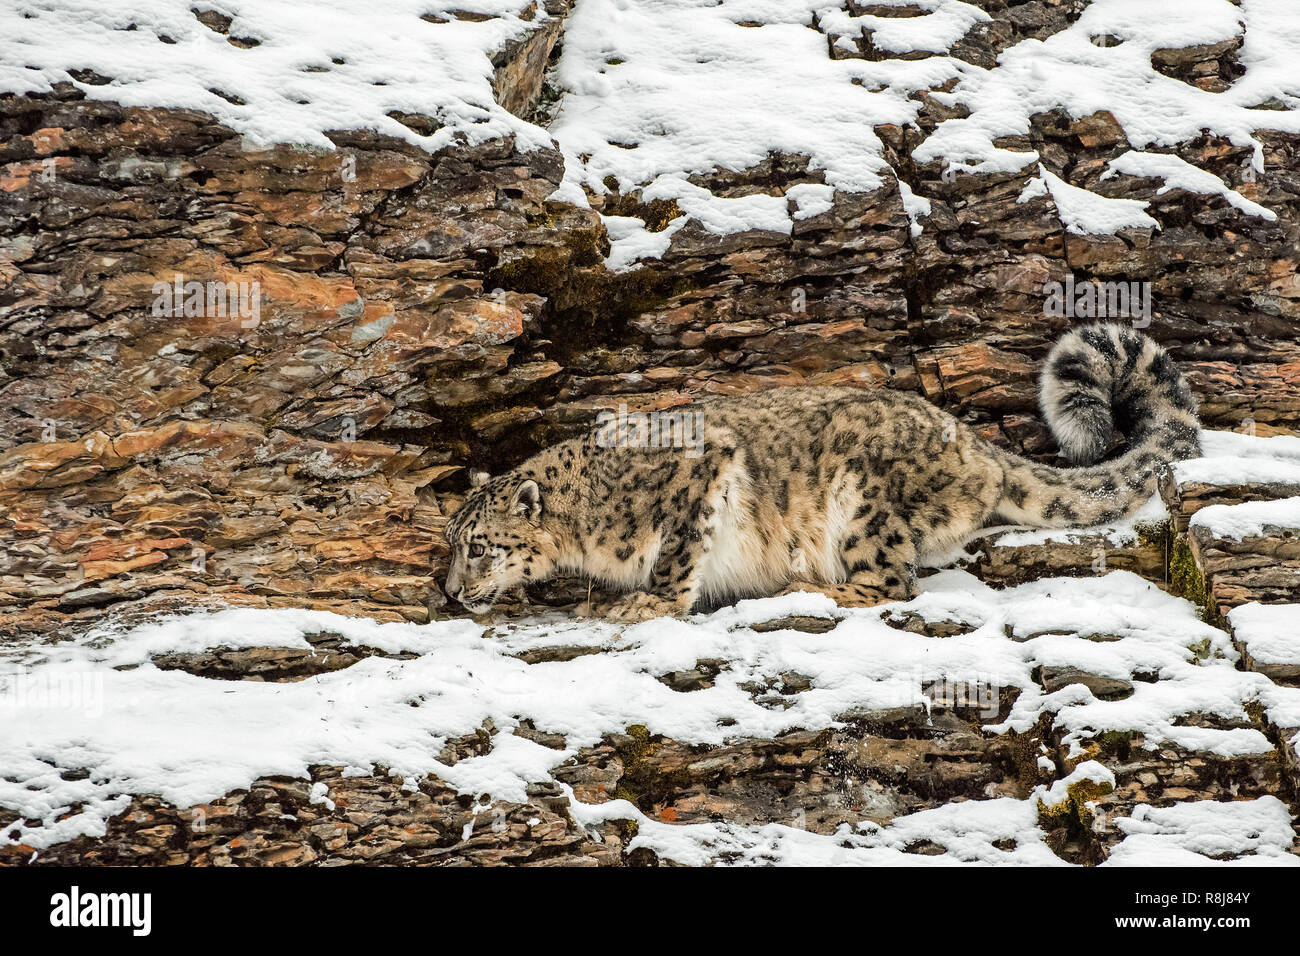 Snow Leopard s'accroupit sur une falaise rocheuse à l'hiver dans la neige Banque D'Images